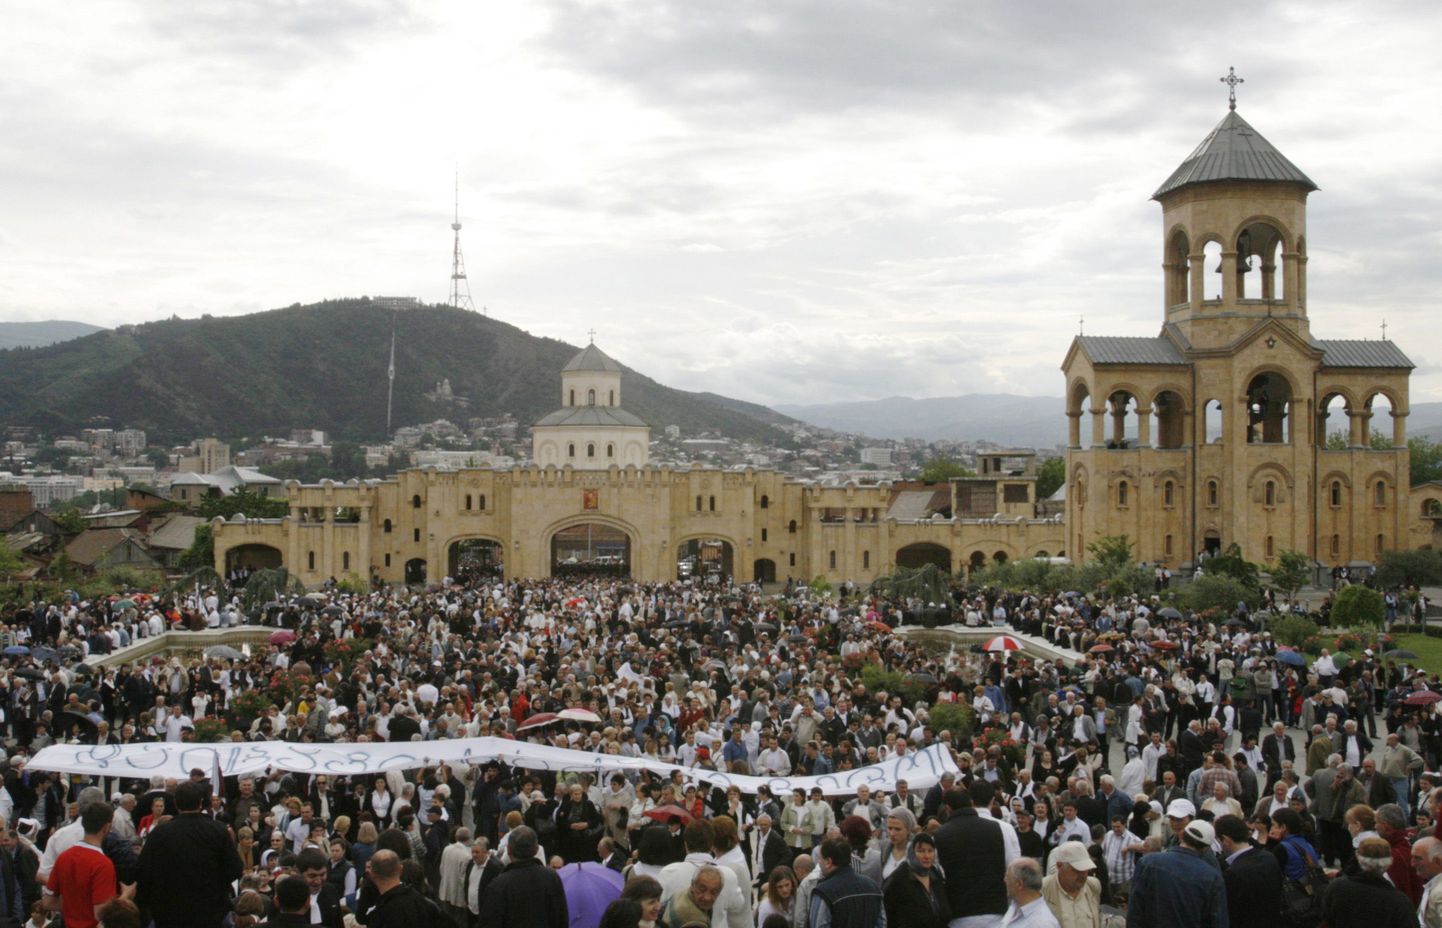 Gruusia opositsiooni toetajad käisid iseseisvuspäeval Thbilisi Püha Kolmainu katedraali juures patriarh Ilia II käest nõu küsimas.